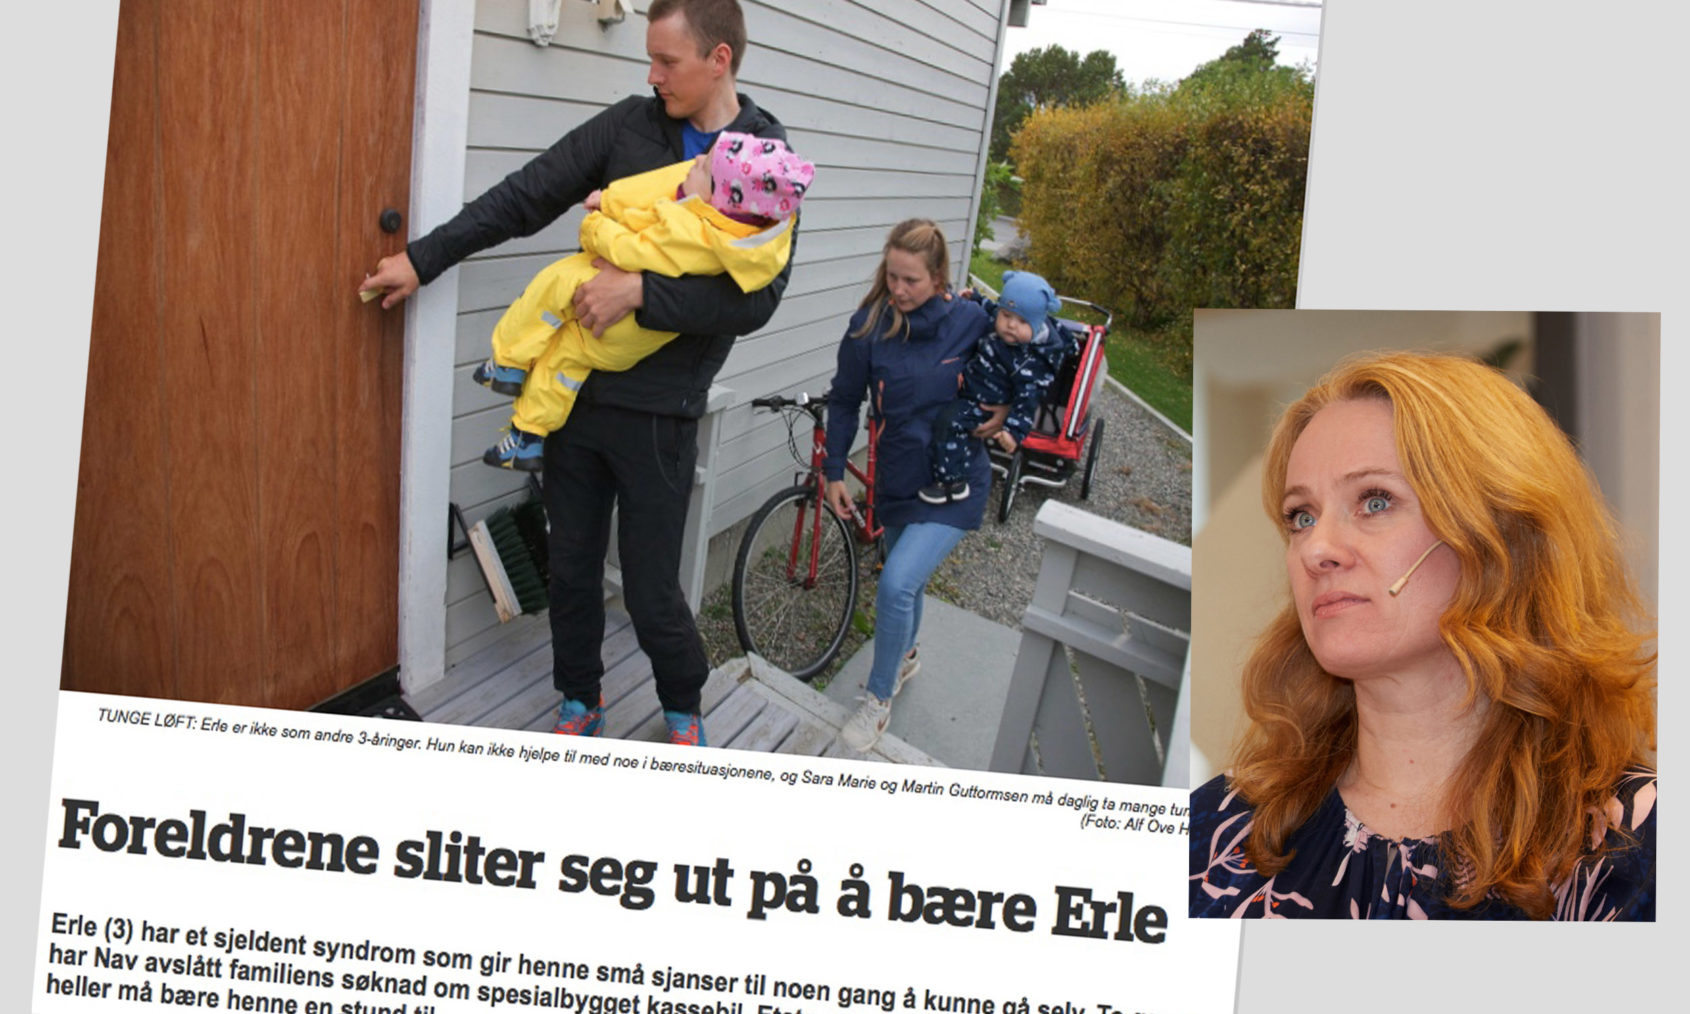 Montasje med oppslaget «Foreldrene sliter seg ut på å bære Erle» og portrettfoto av Anniken Hauglie.